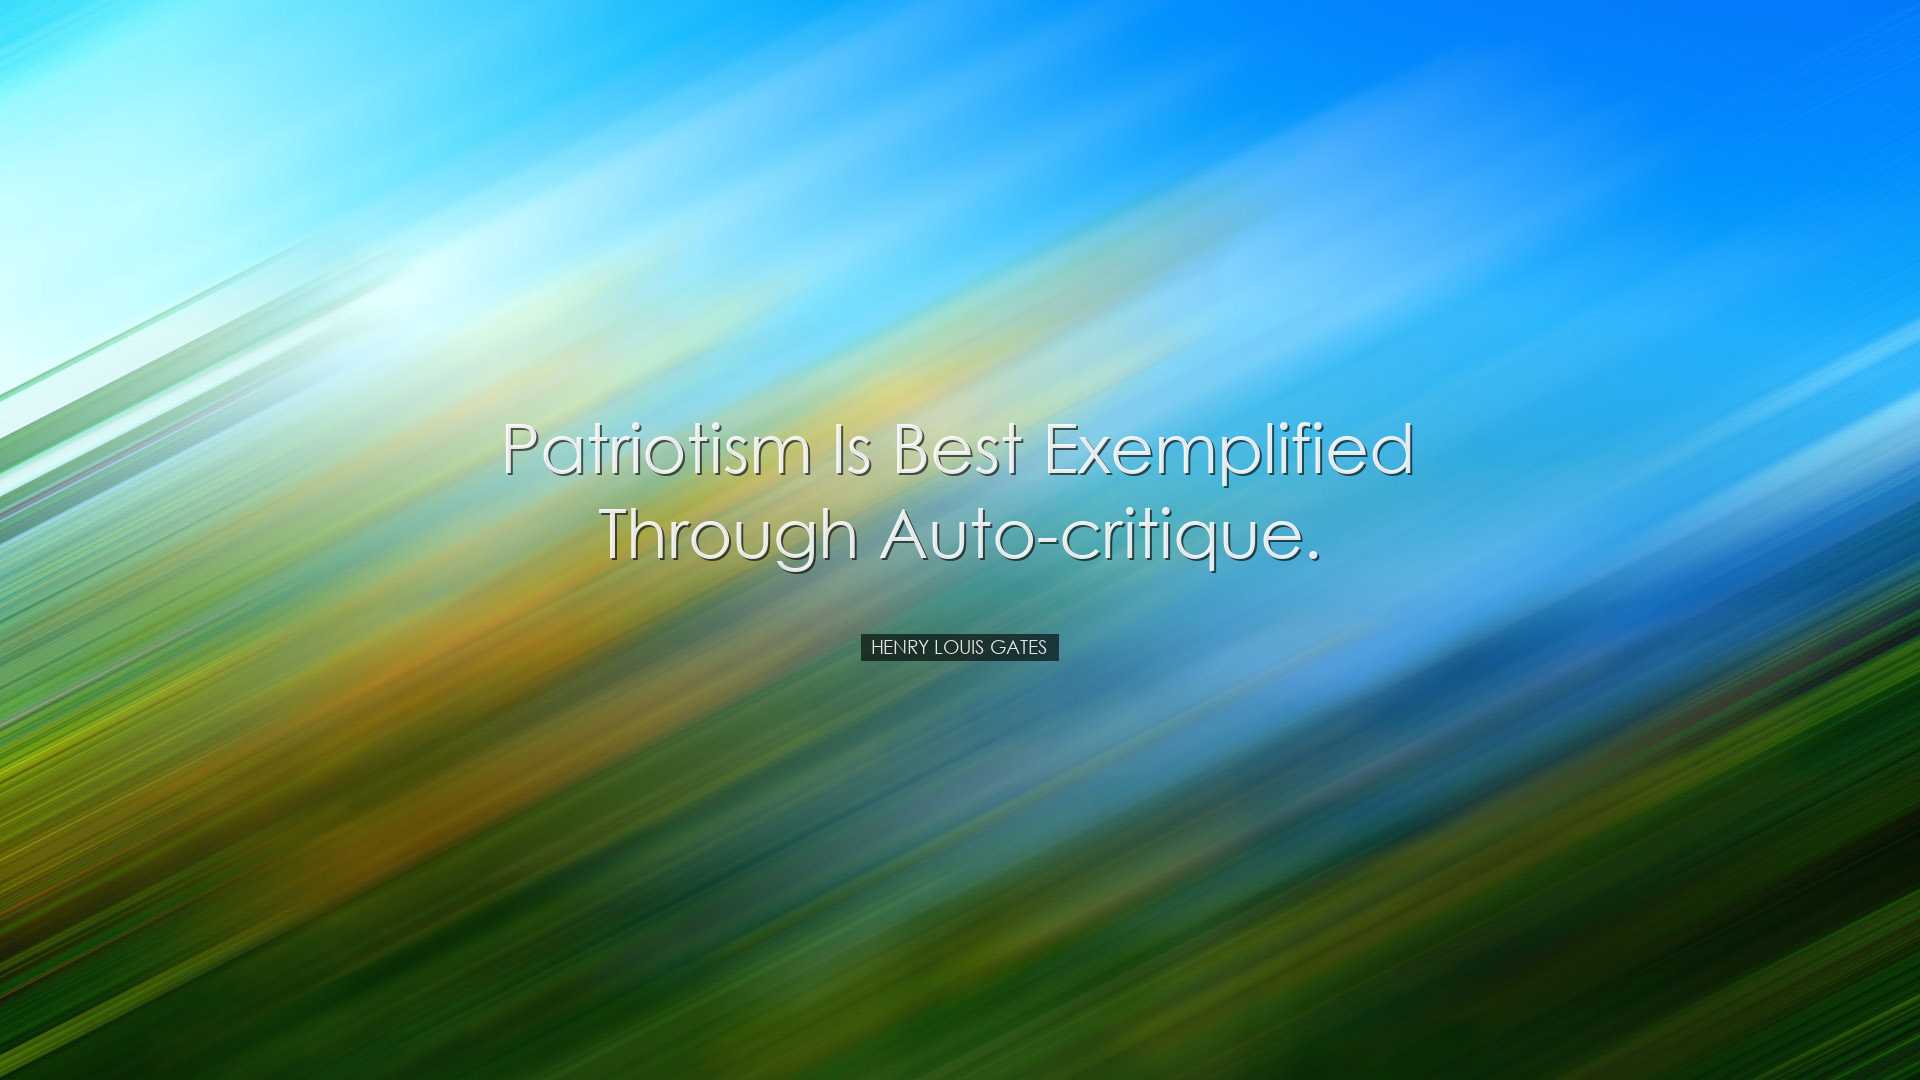 Patriotism is best exemplified through auto-critique. - Henry Loui